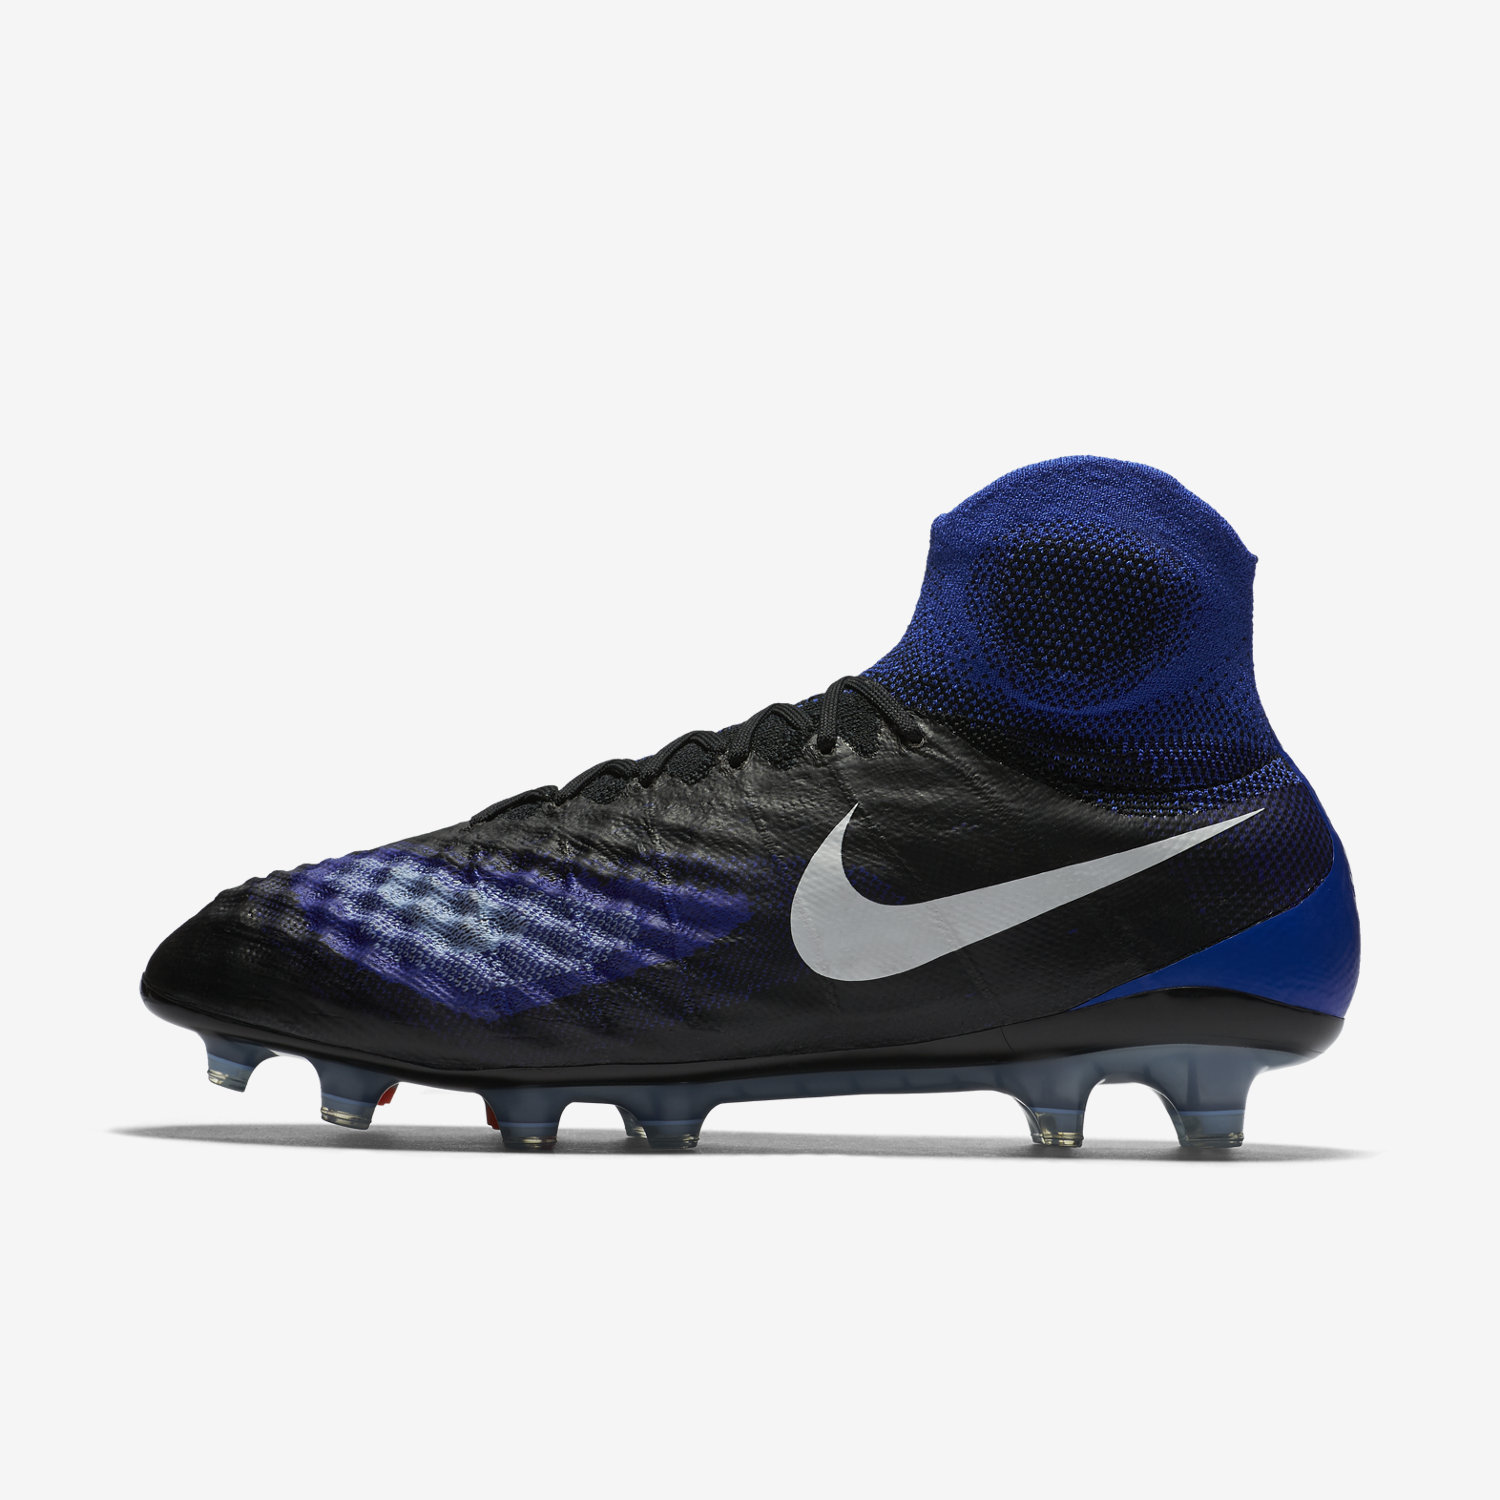 ποδοσφαιρικα παπουτσια ανδρικα Nike Magista Obra II FG μαυρα/μπλε/ασπρα 81048583FU